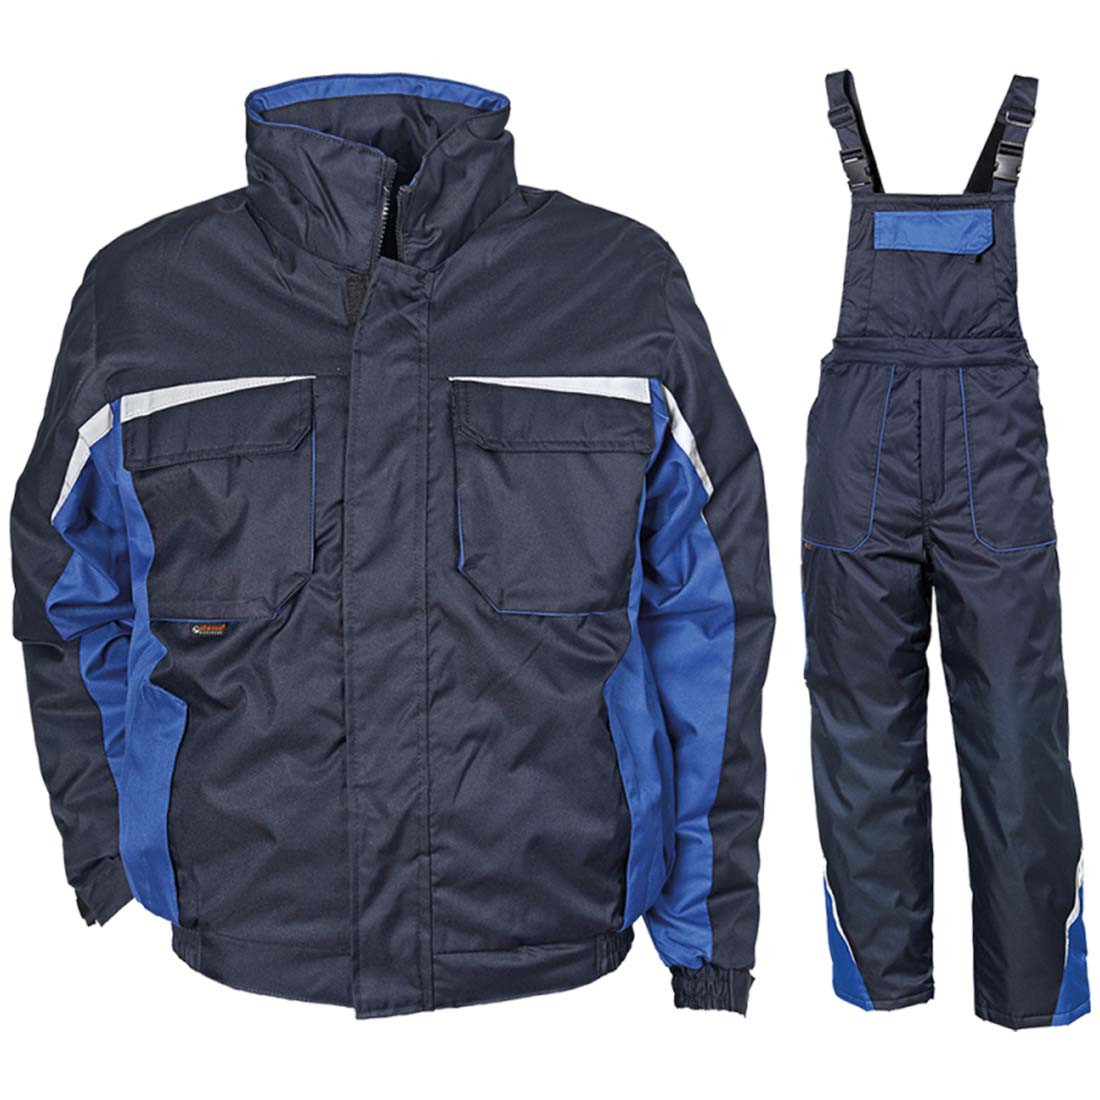 Combinaison imperméable d'hiver Kastor - Les vêtements de protection